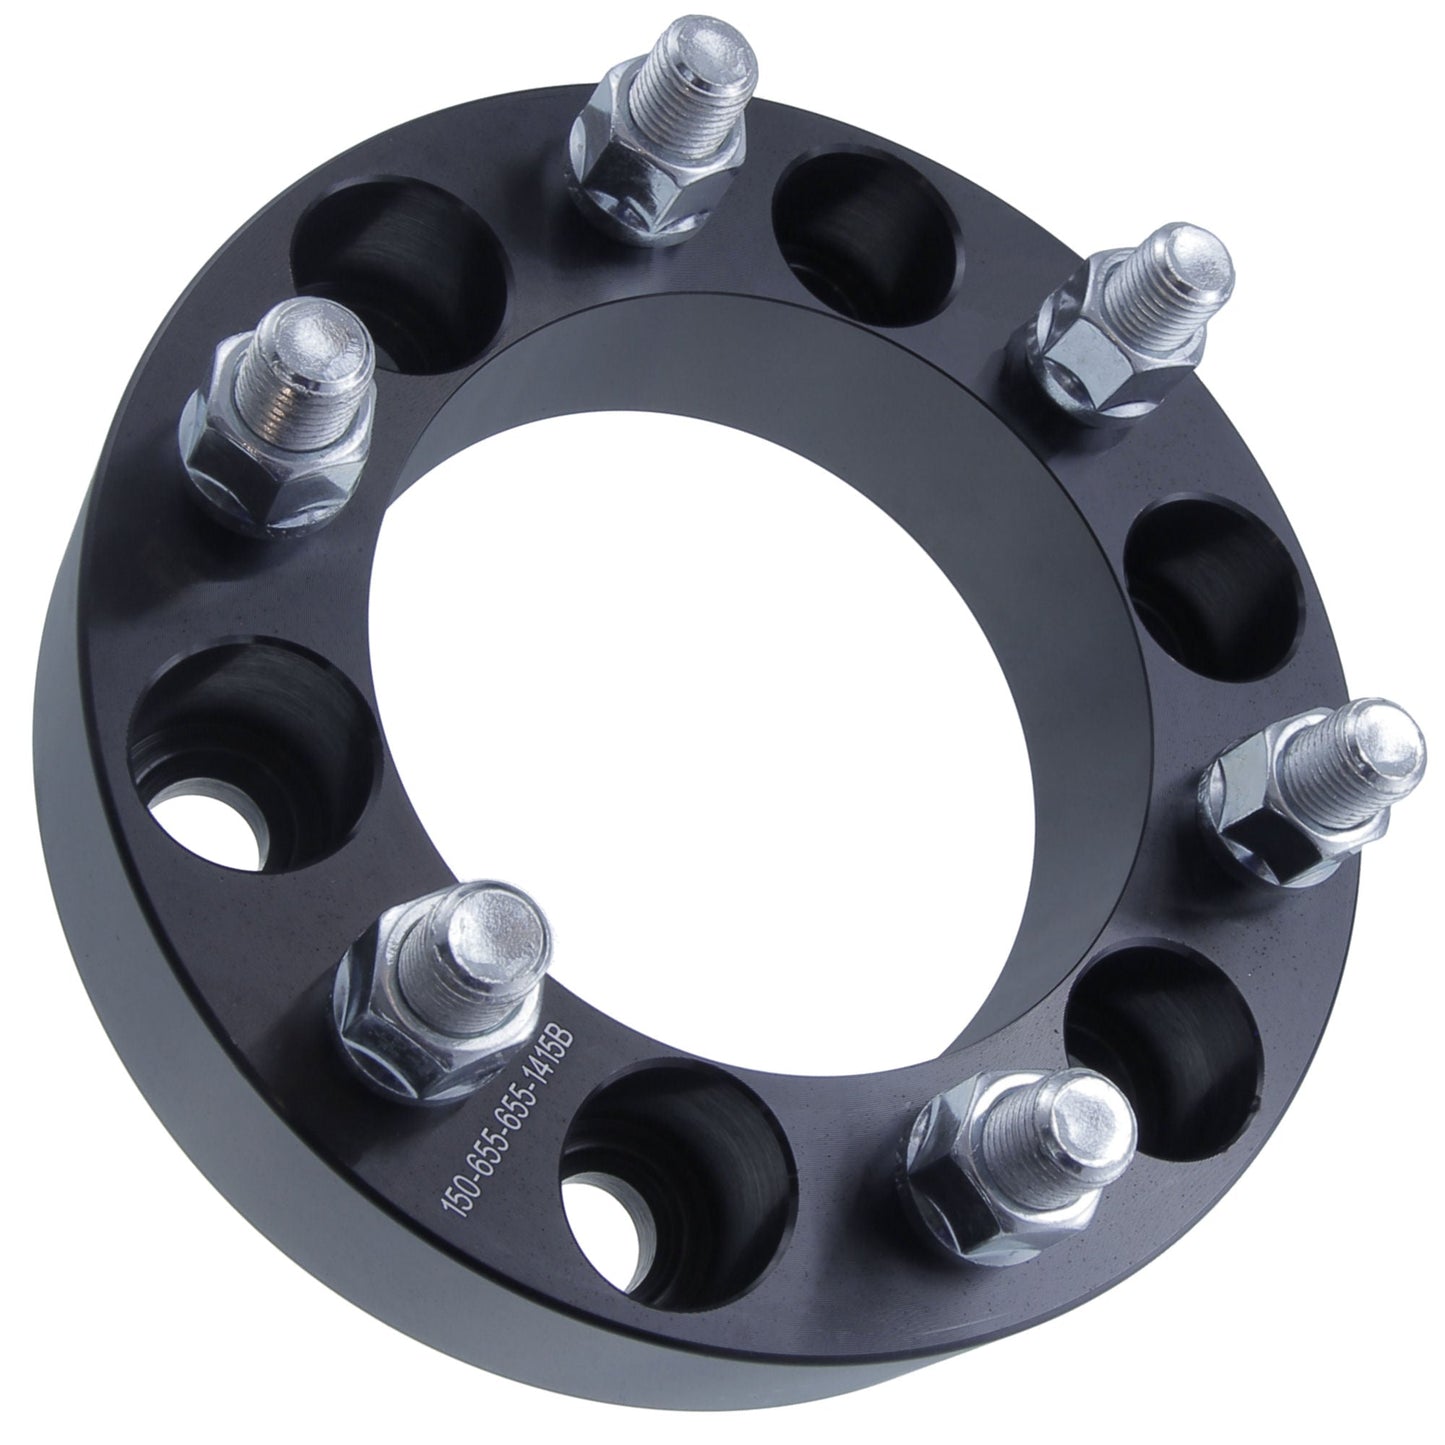 1" (25mm) Titan Wheel Spacers for Infiniti and Nissan Trucks SUVs | 6x5.5 (6x139.7) | 12x1.25 Studs | Titan Wheel Accessories